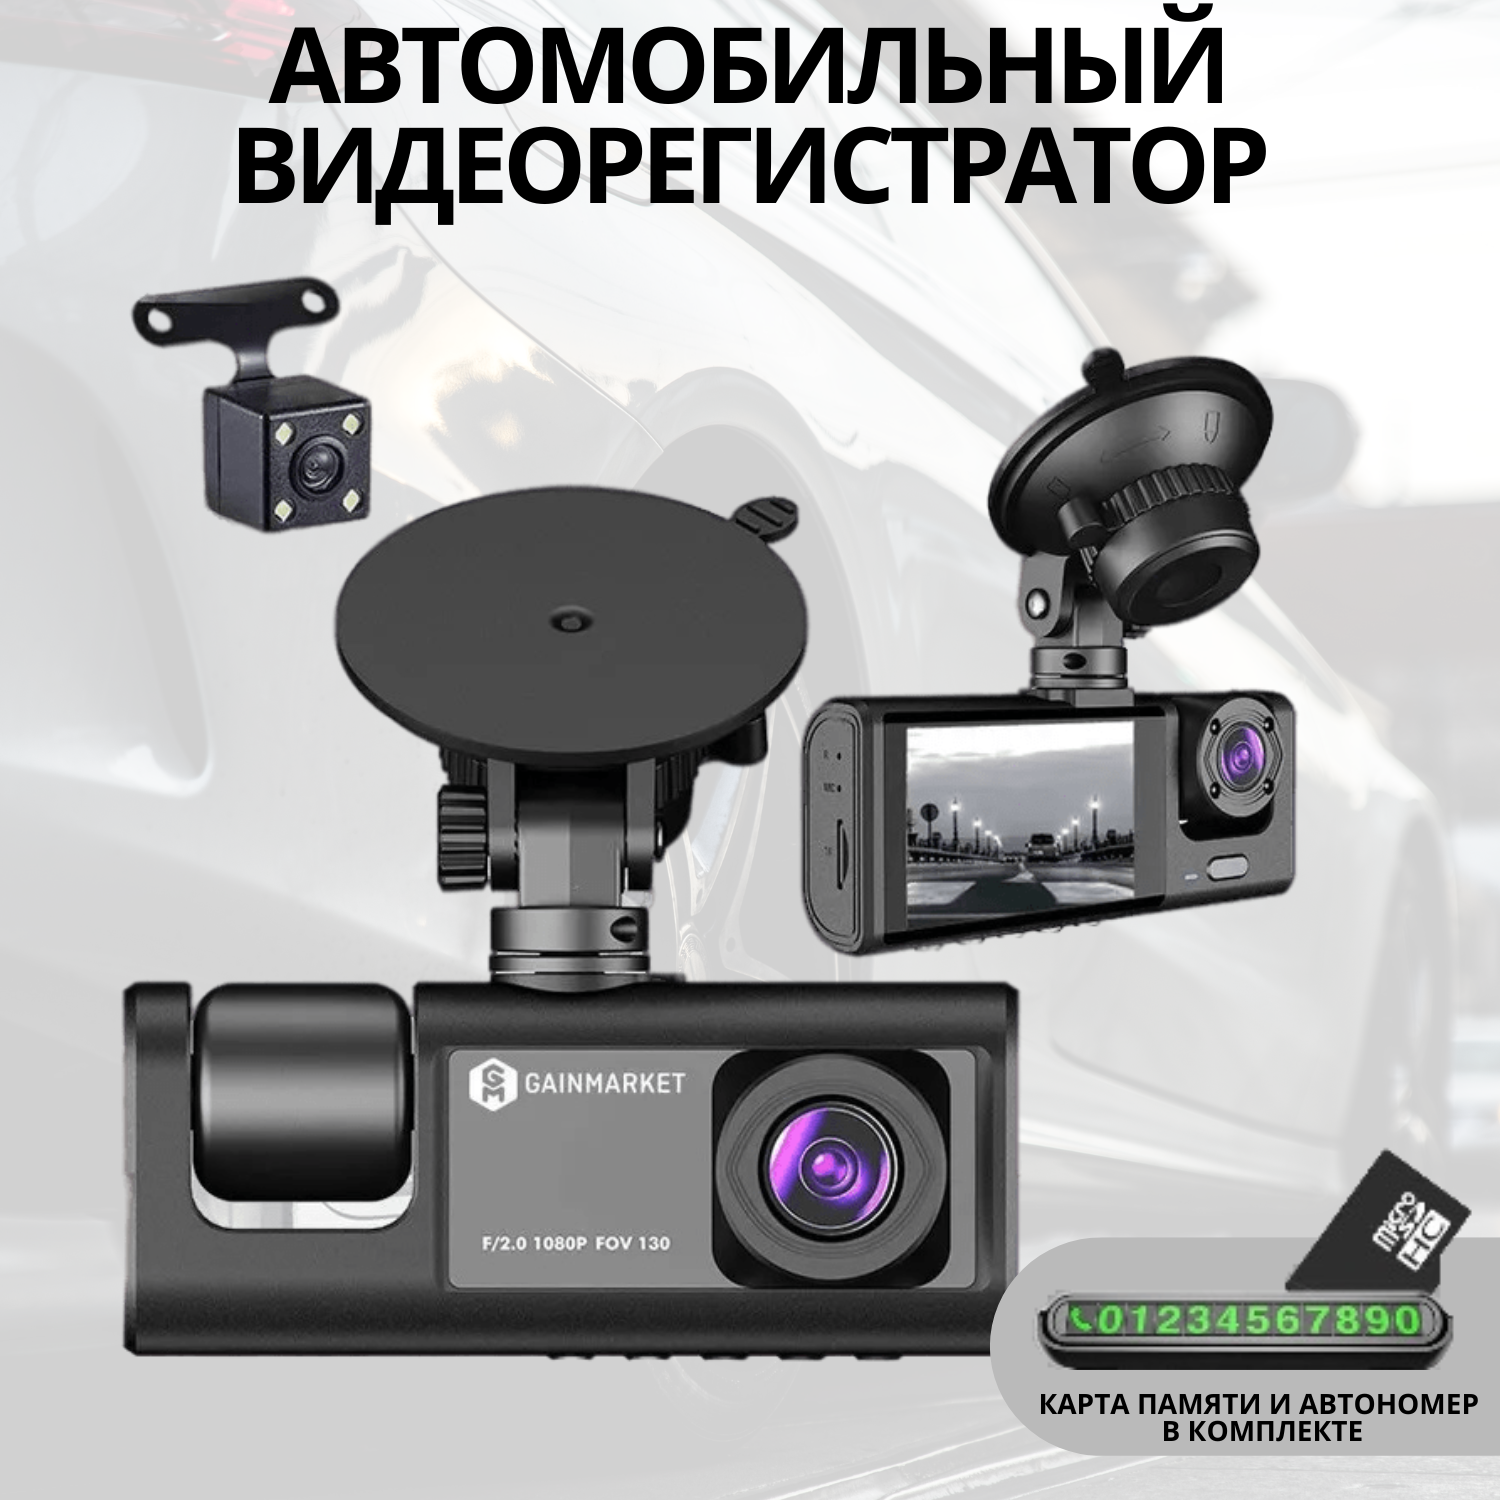 Видеорегистратор GAINMARKET АА0905 с камерой заднего вида, автовизиткой, SD картой 32Гб